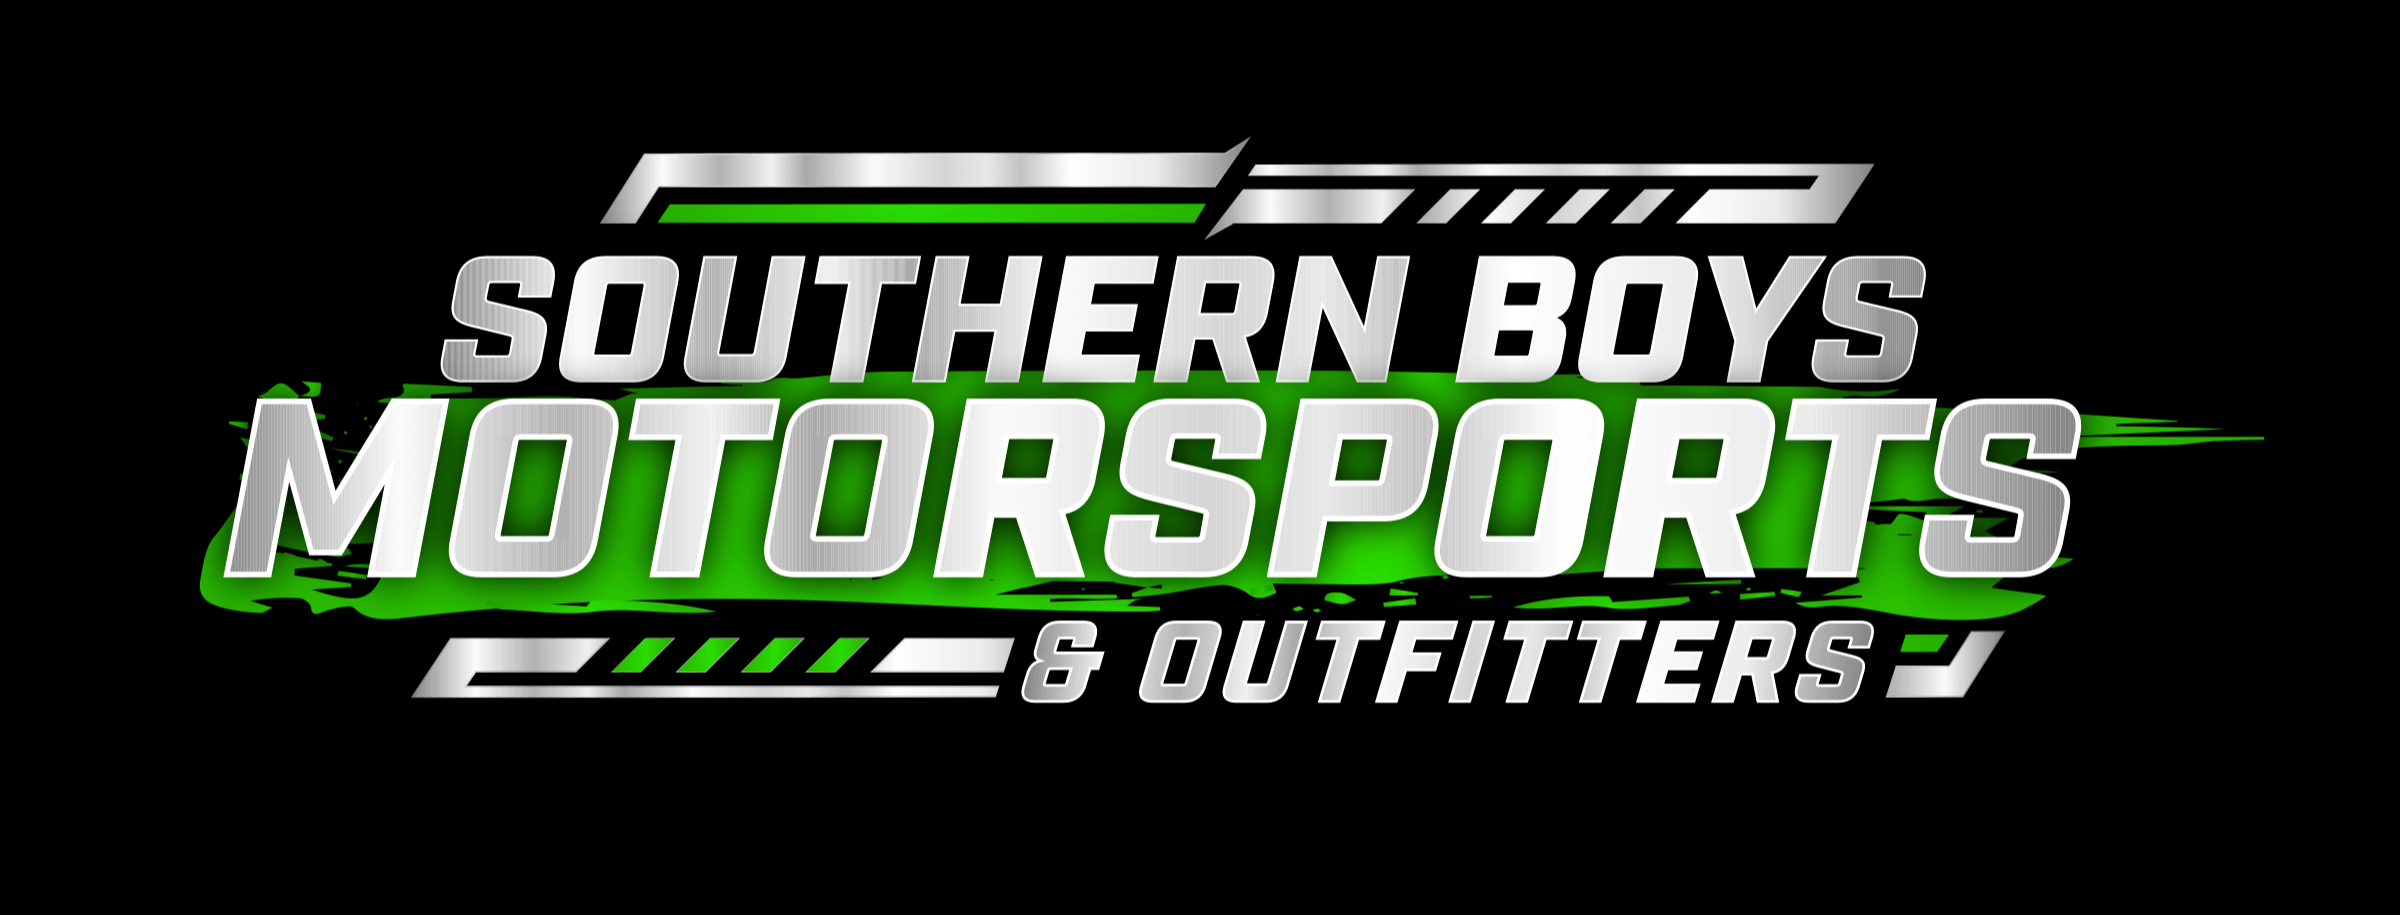 Southern Boys Motorsports